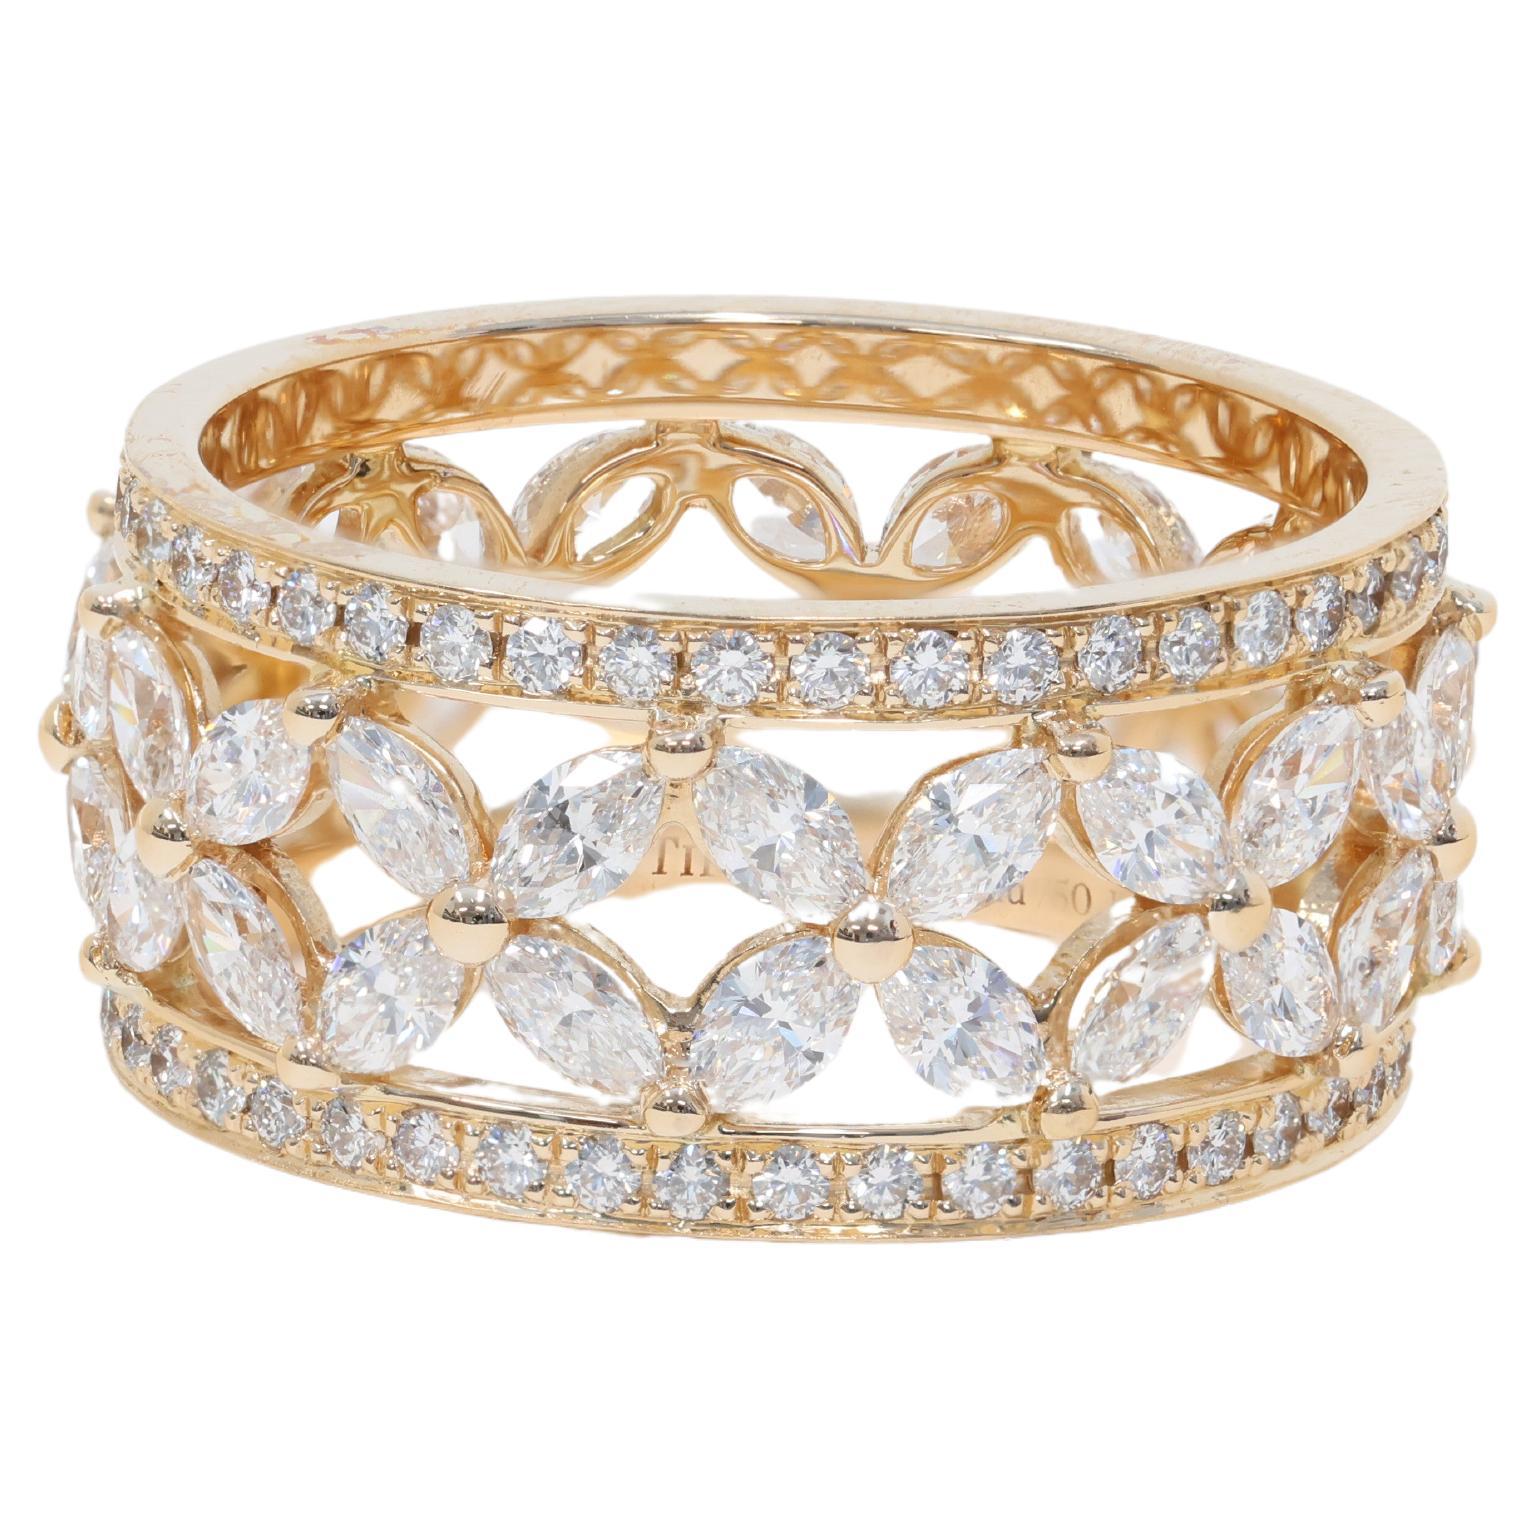 Tiffany & Co. Bague Victoria en or rose 18 carats et diamants 2,73 carats